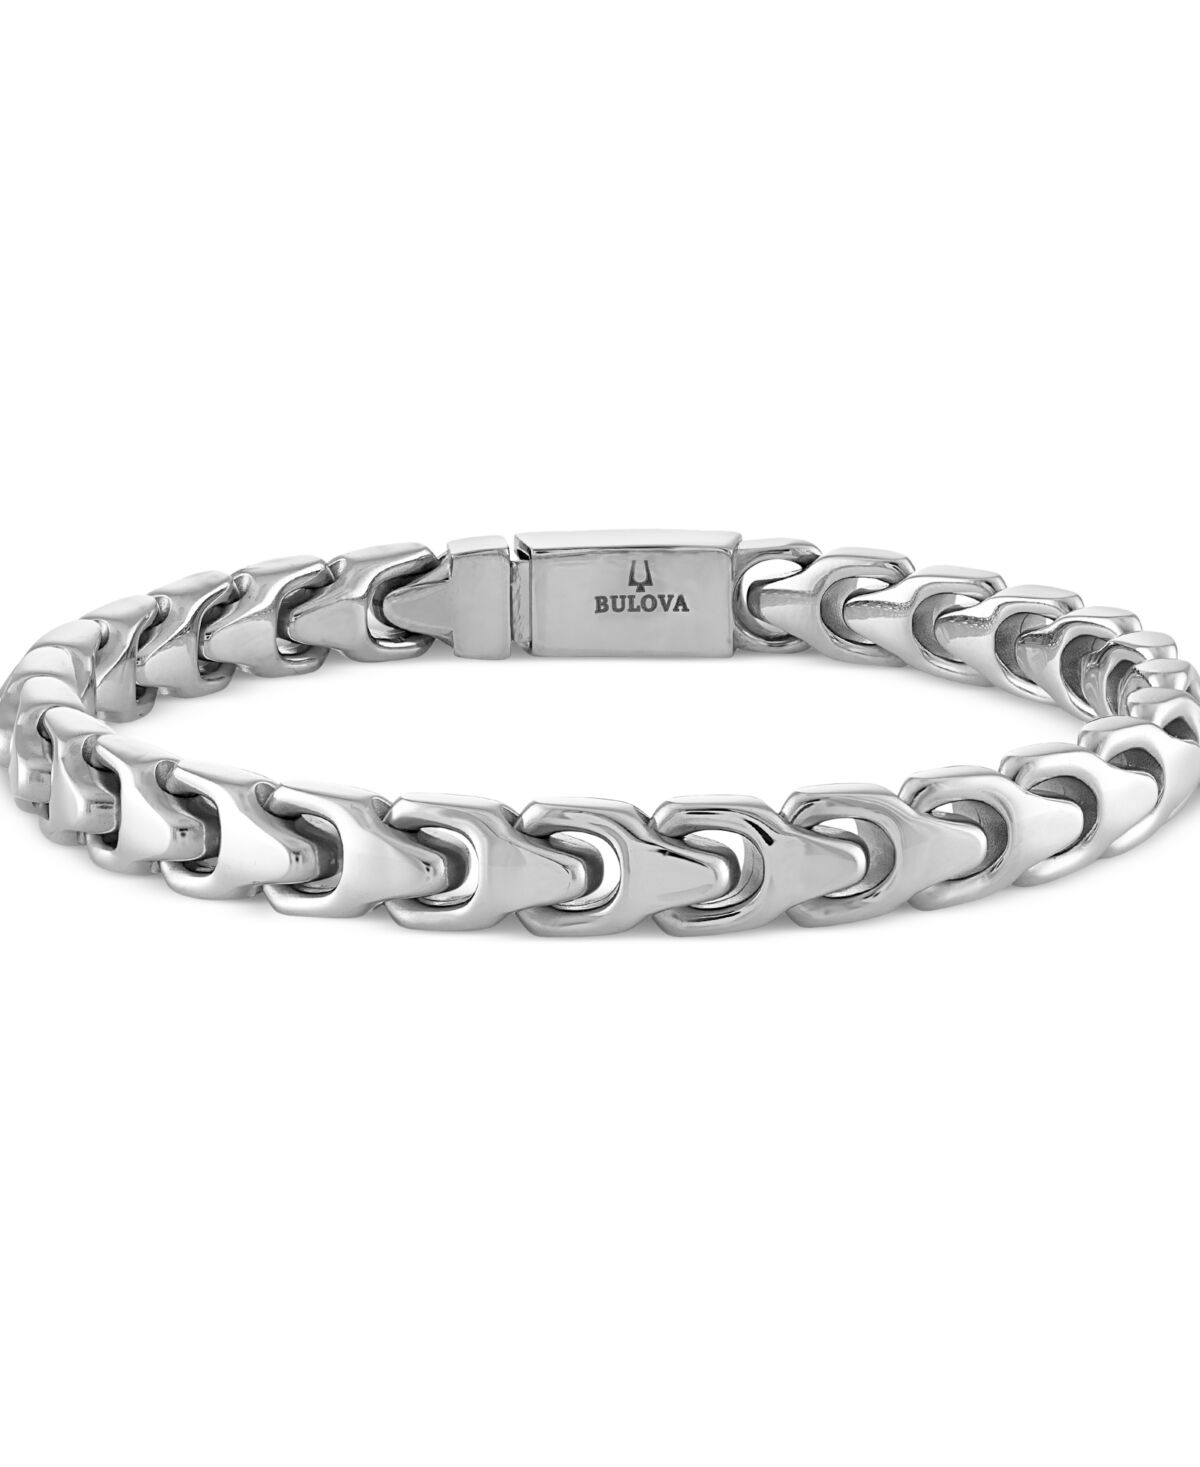 Bulova Men's Link Bracelet in Stainless Steel - Silver